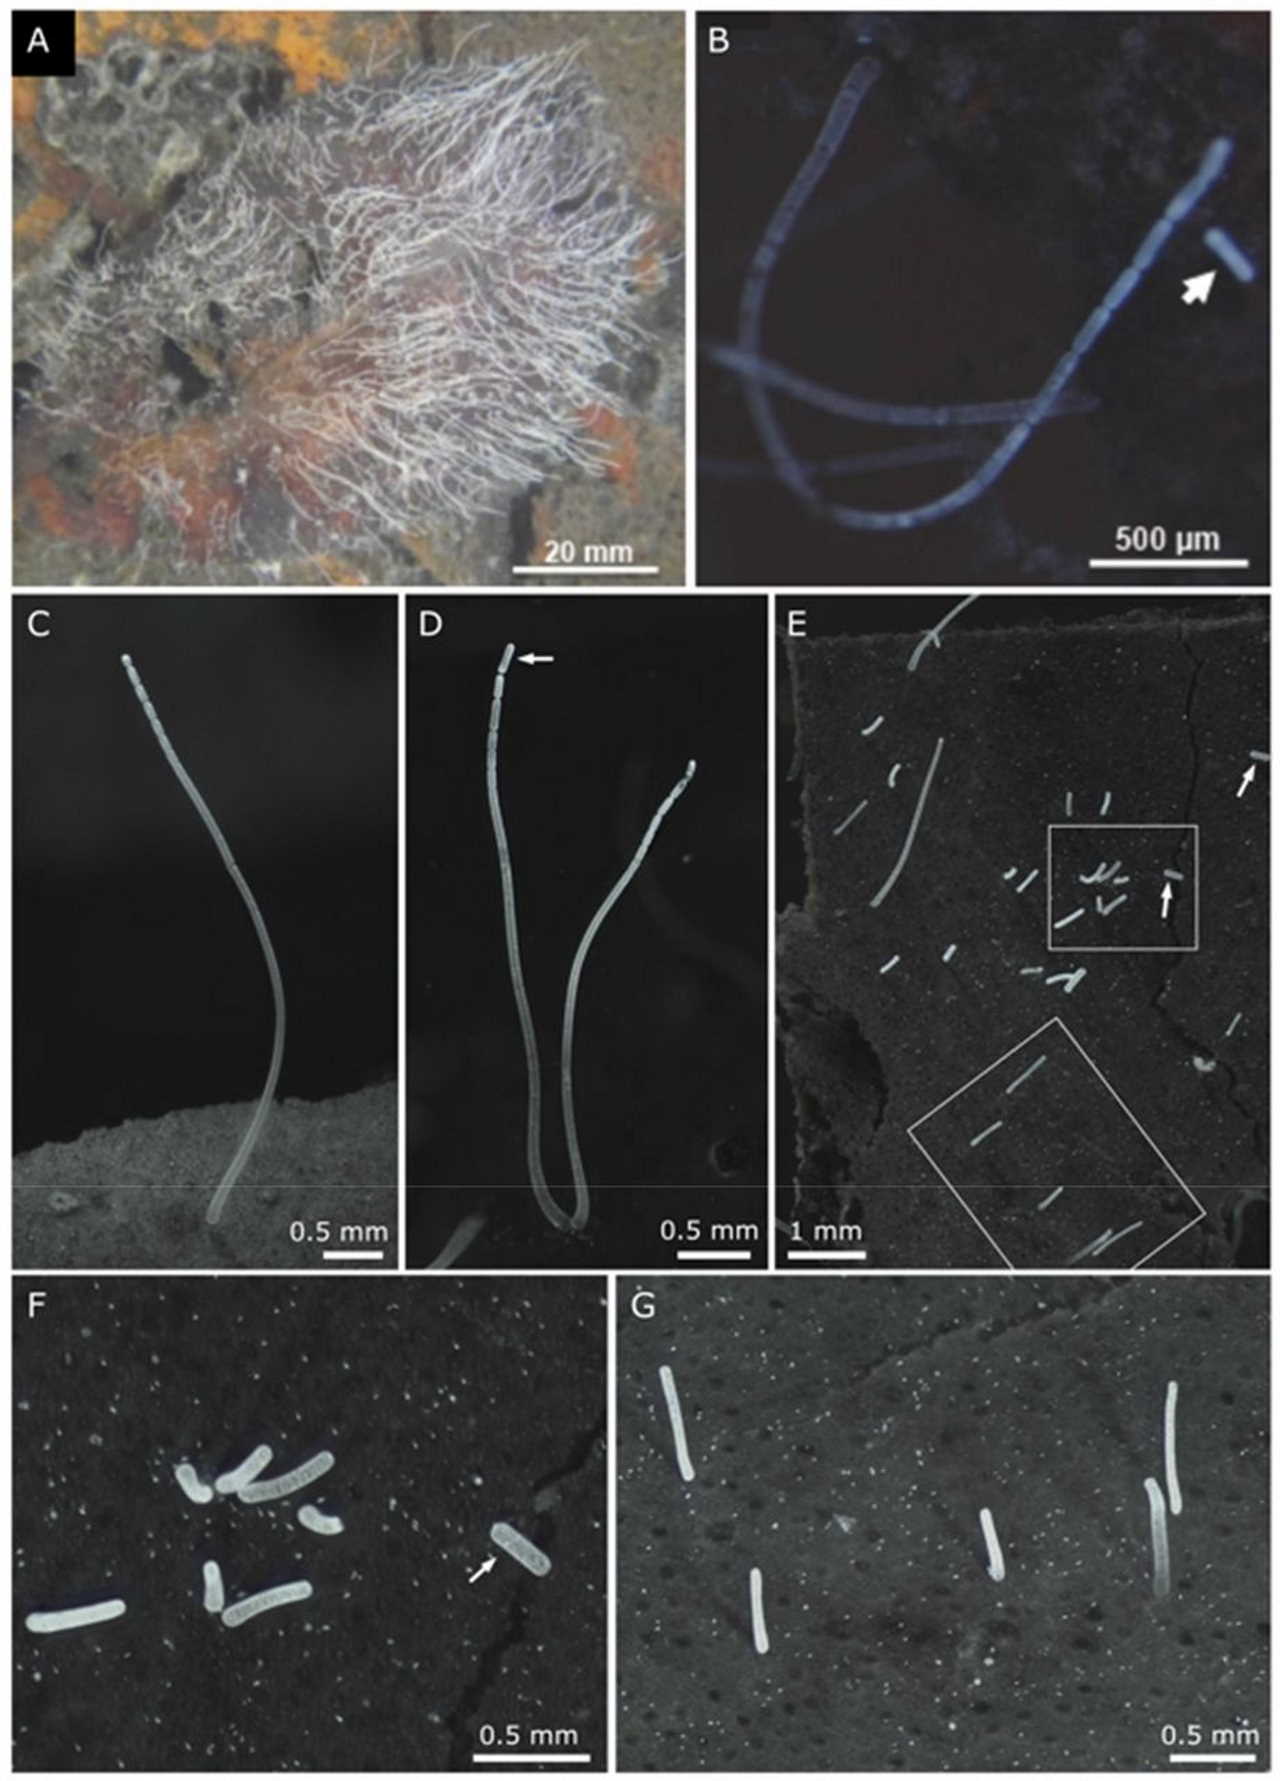 Мікроскопія нового виду бактерії. А. Клітини на листкові мангру. В-D. Демонстрація брунькування бактерії. Е. Ділянка листка з відділеними дочірніми клітинами бактерії різного розміру.&amp;nbsp;F-G. Те ж зі збільшенням.&amp;nbsp;Volland et al. / bioRxiv, 2022